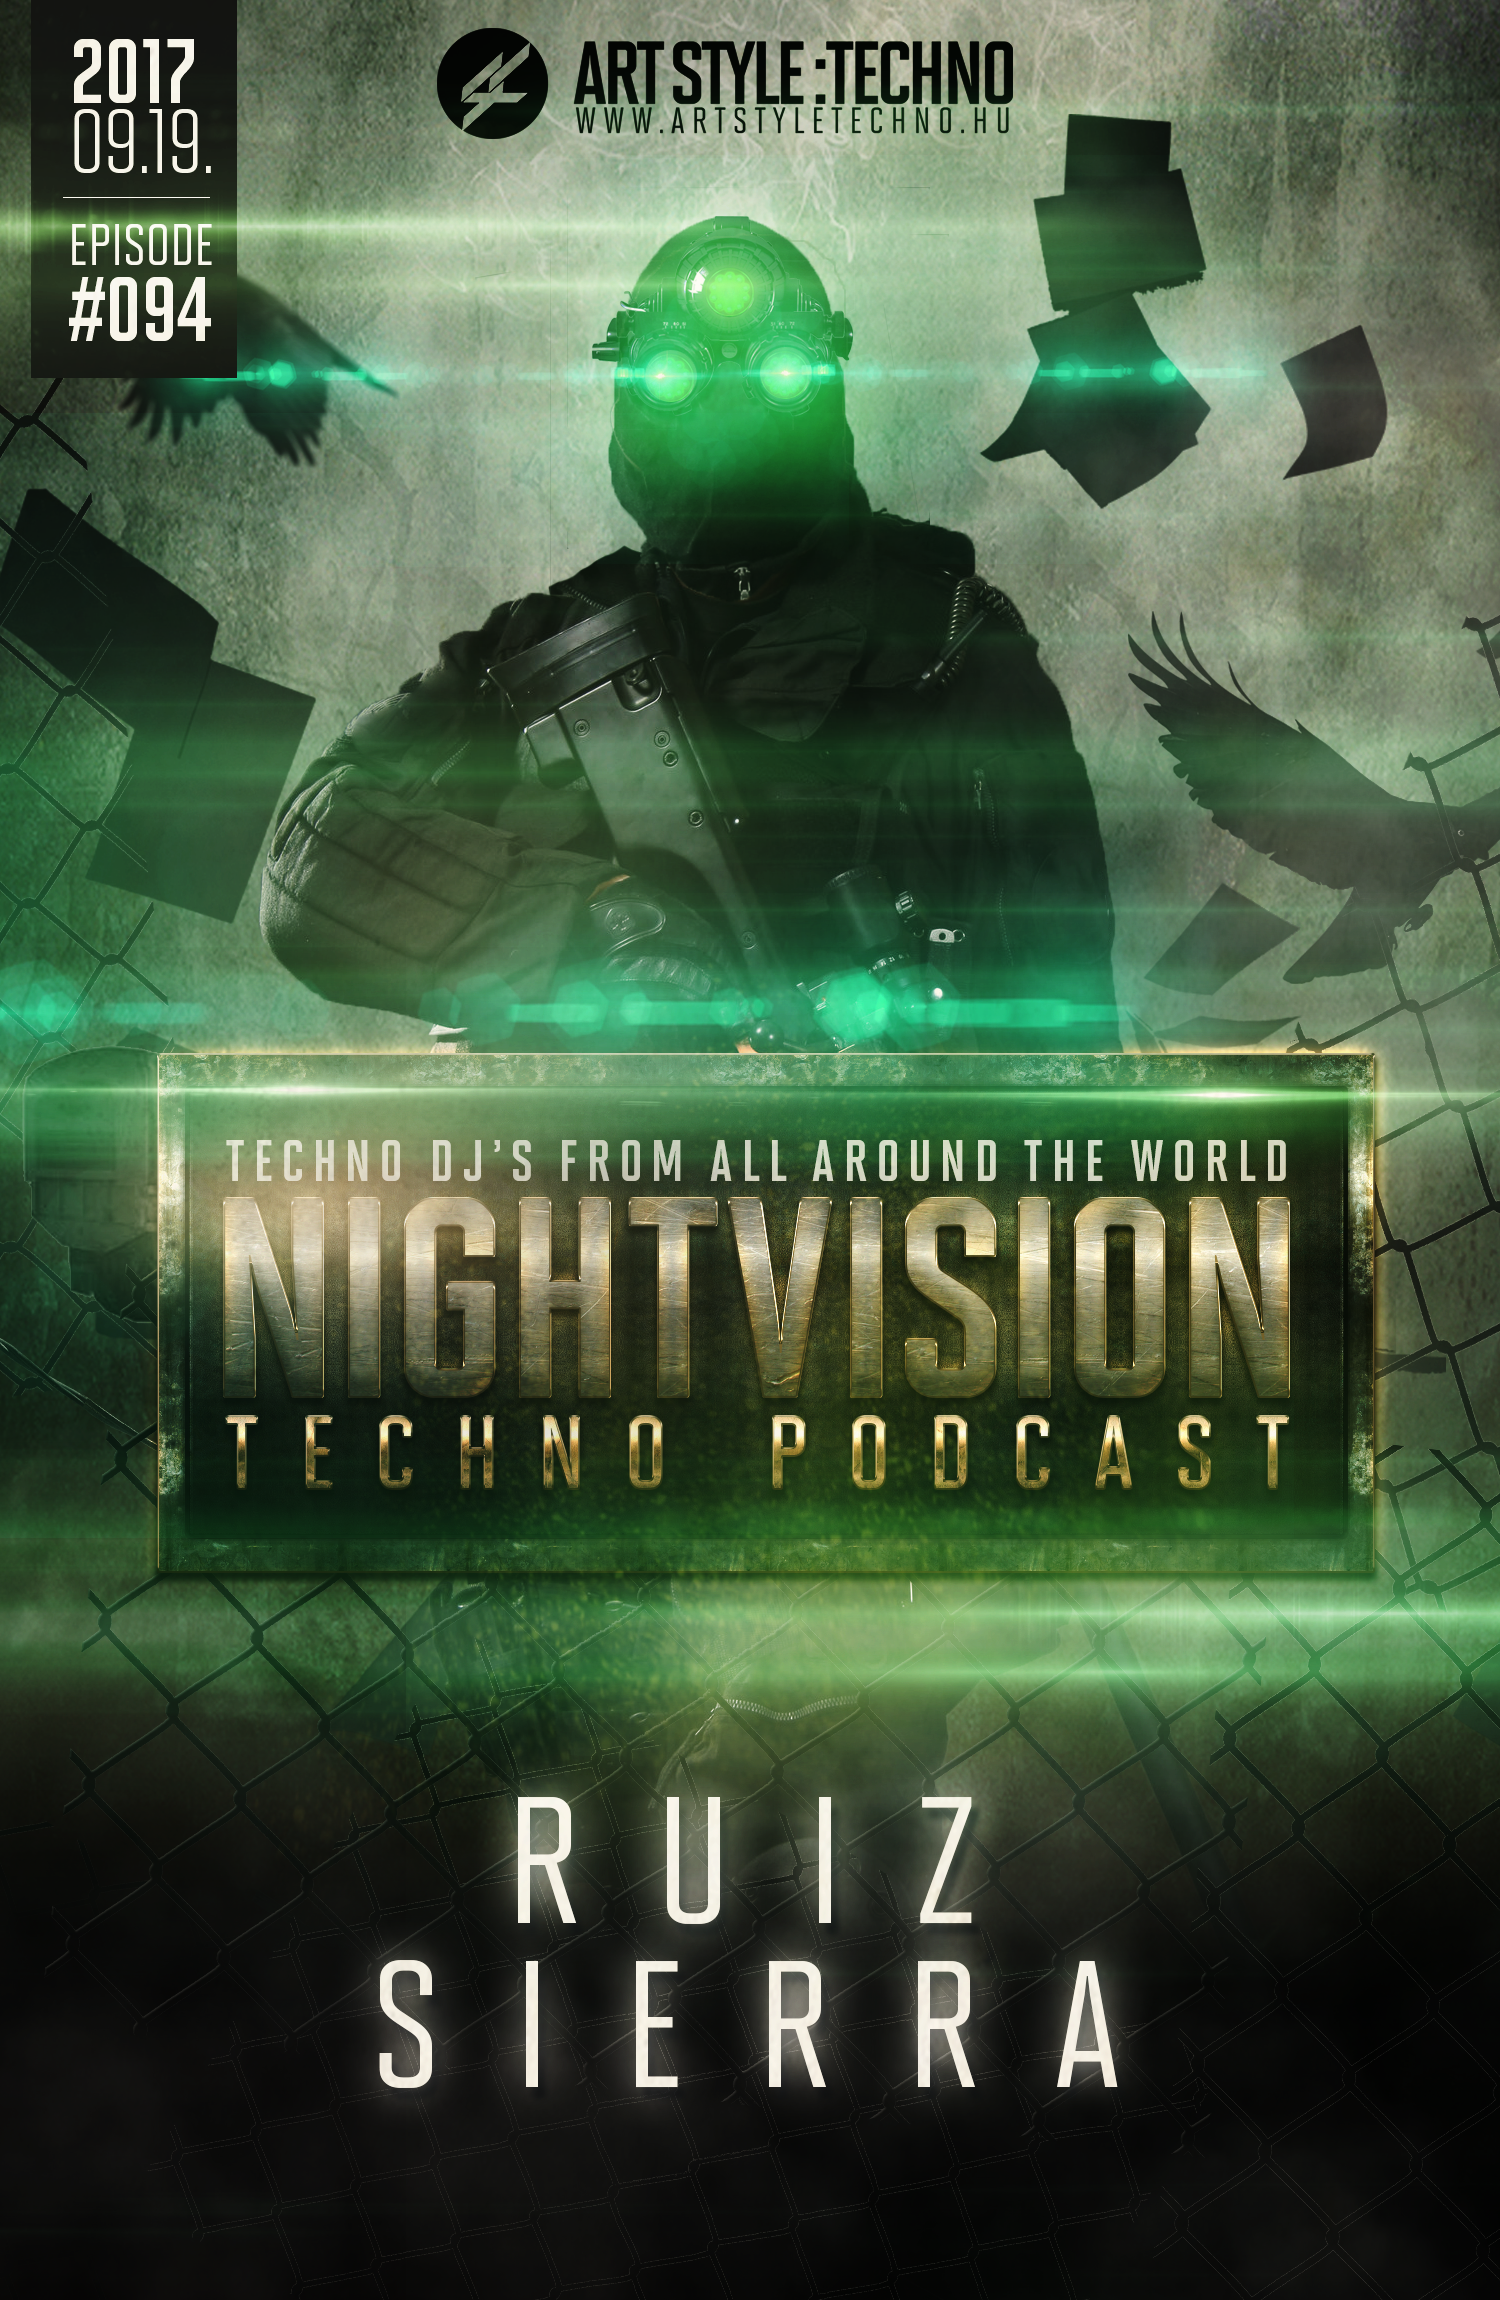 Ruiz Sierra [HU] - NightVision Techno Podcast 94 Pt.2